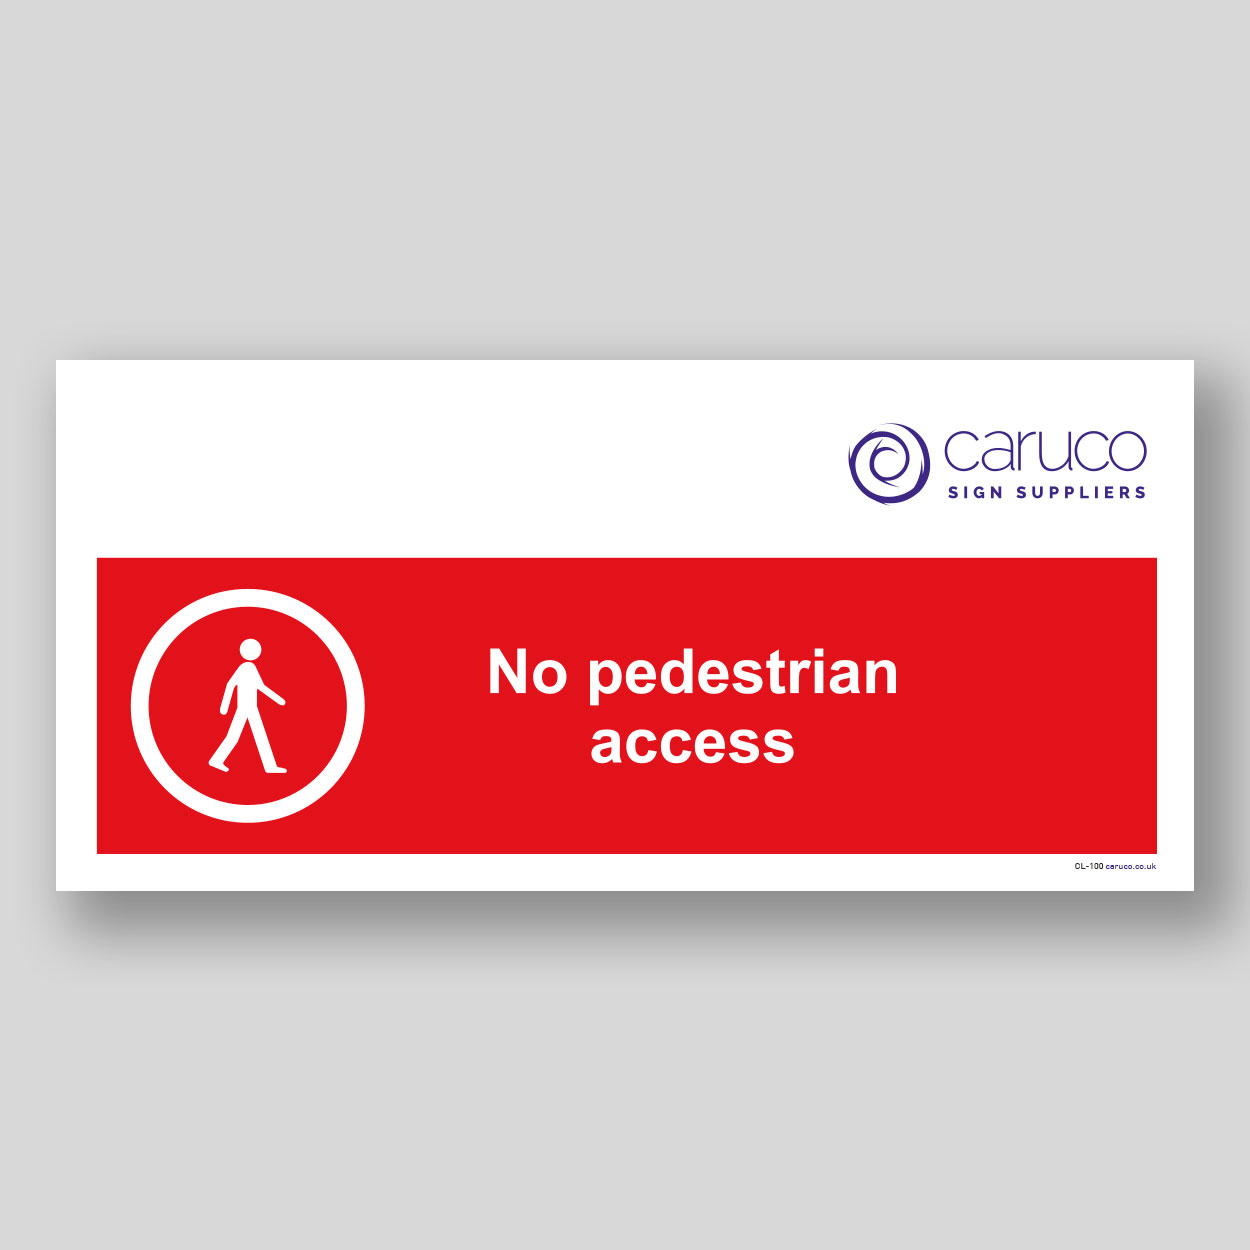 CL-100 No pedestrian access